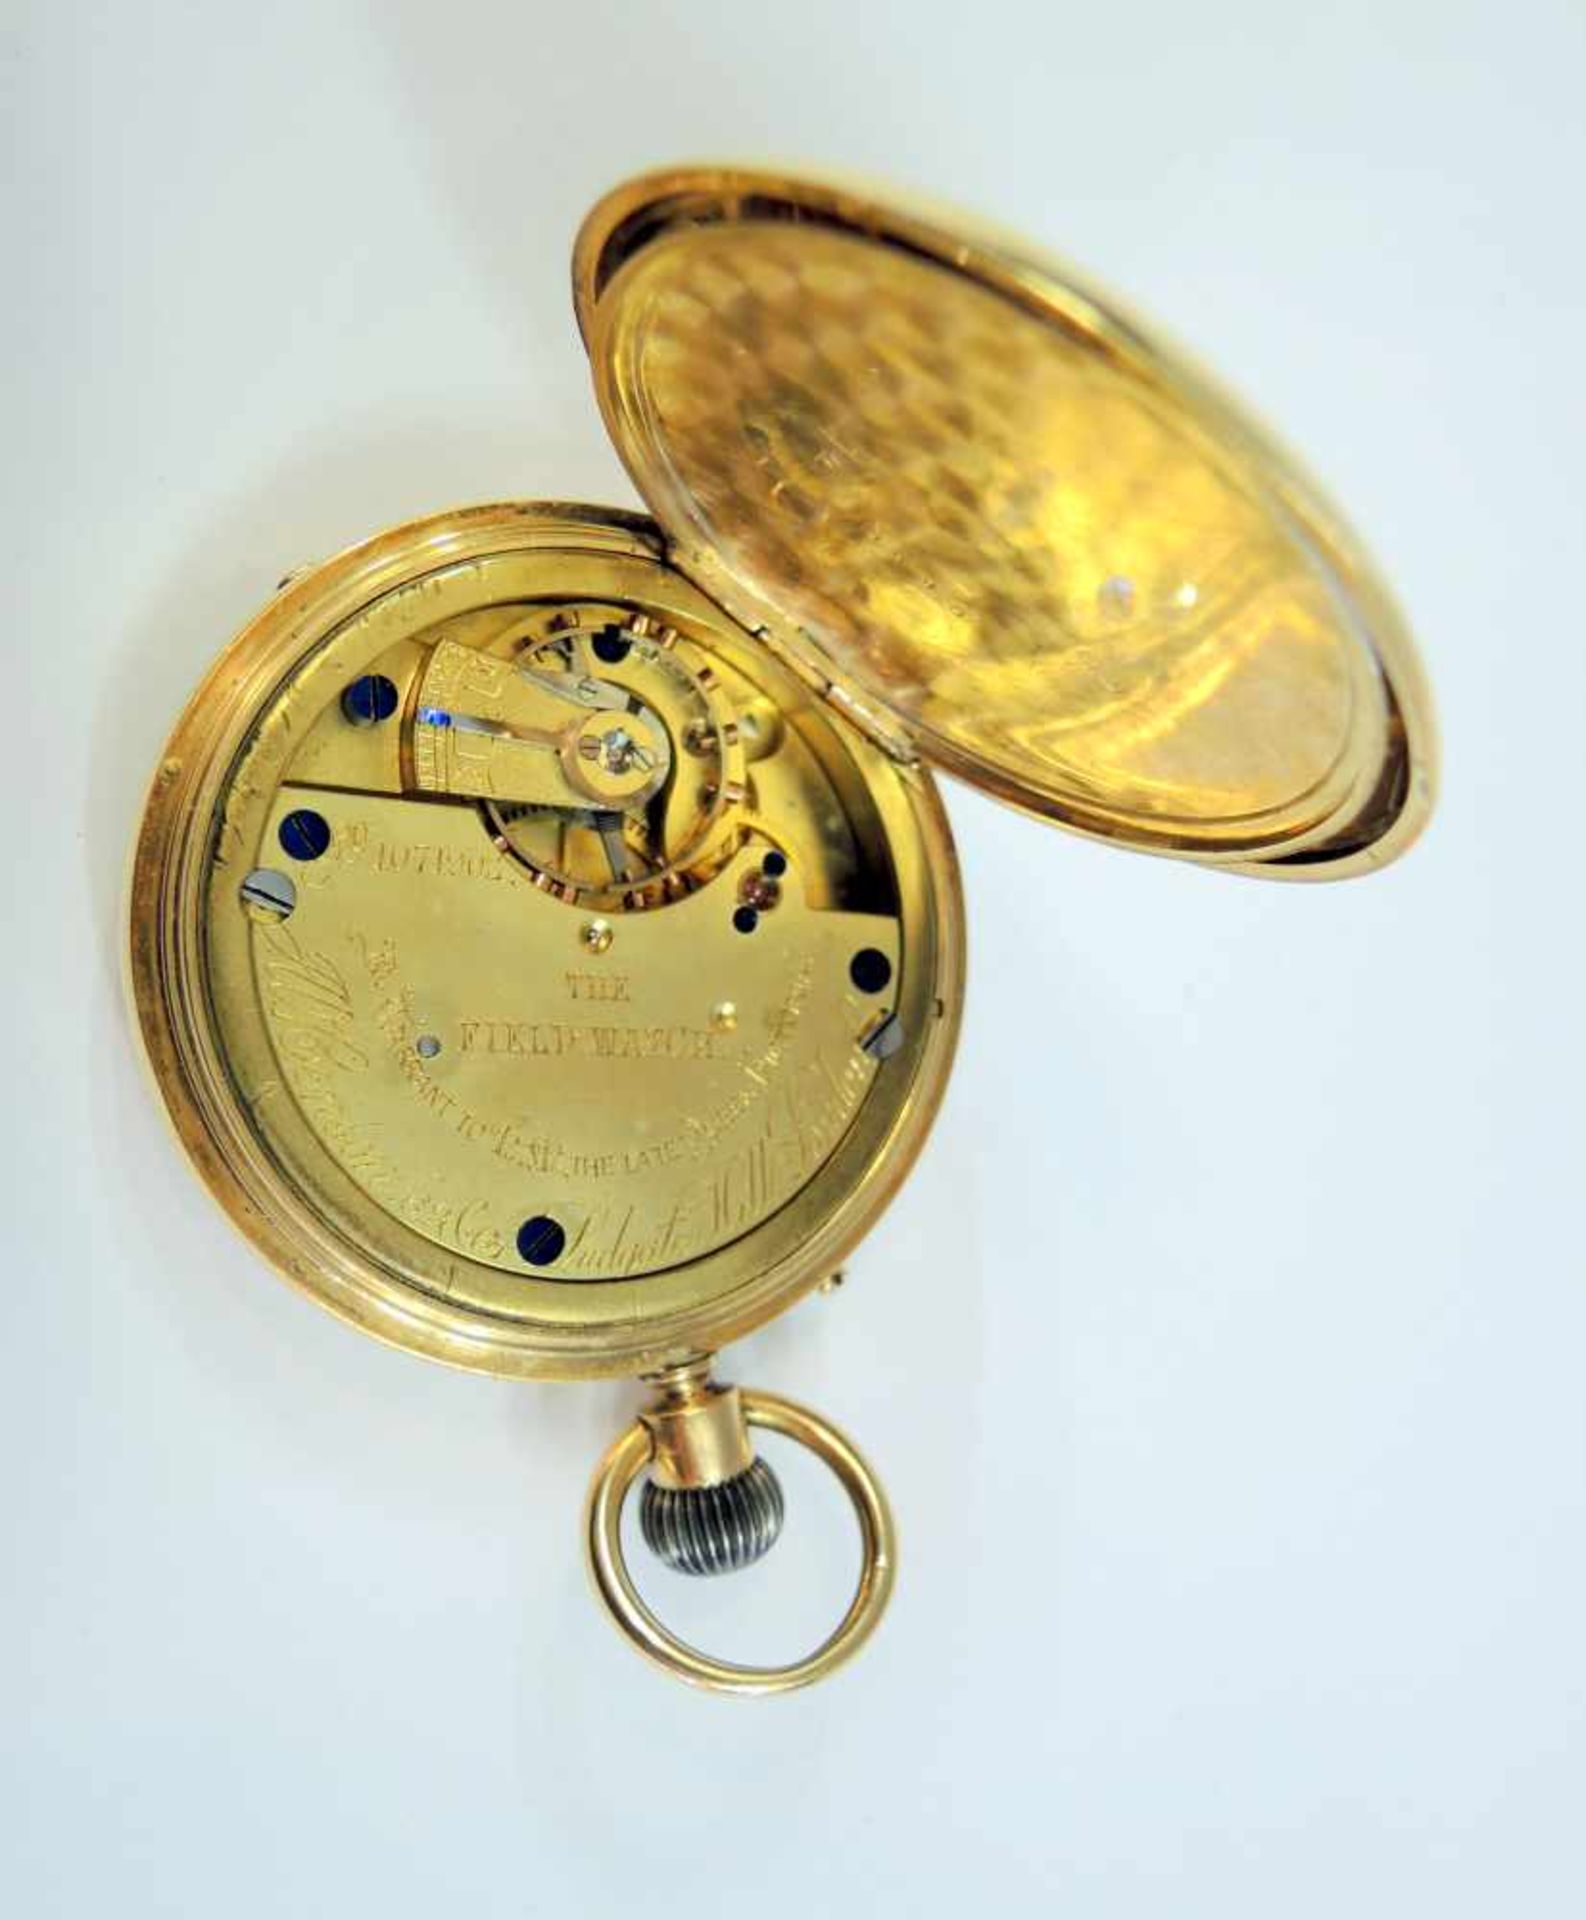 Savonette Taschenuhr 18 K. Gold, Firma Benson - London. Frontdeckel mit feiner Wappengravur. Voll - Bild 3 aus 3